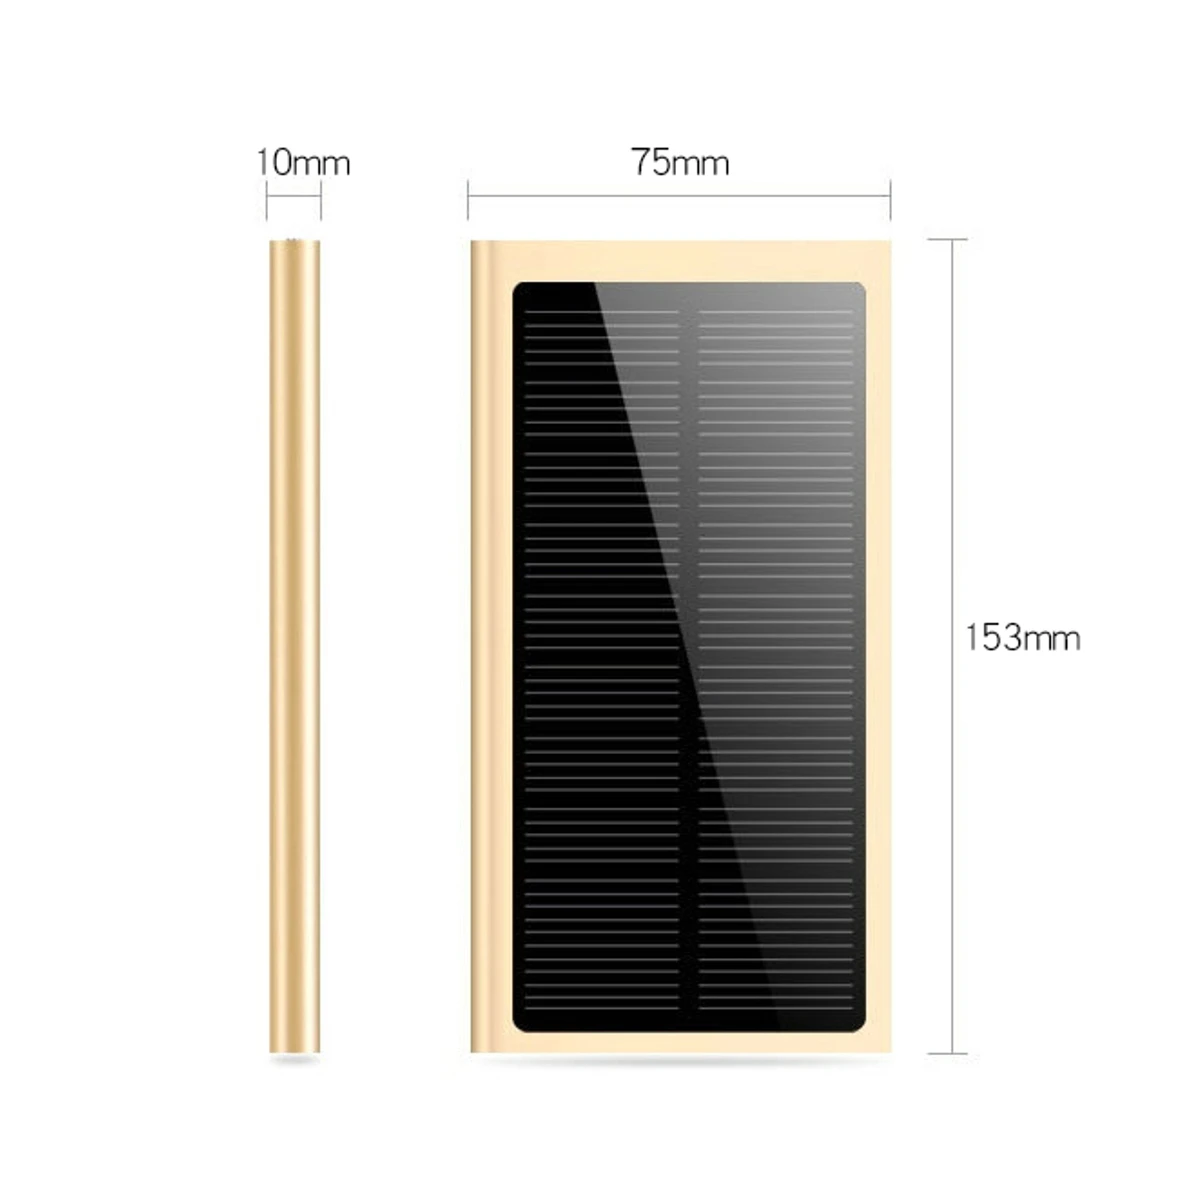 30000 мАч солнечная батарея Солнечное зарядное устройство Внешняя батарея резервный пакет для сотовые телефоны, планшеты для iphone